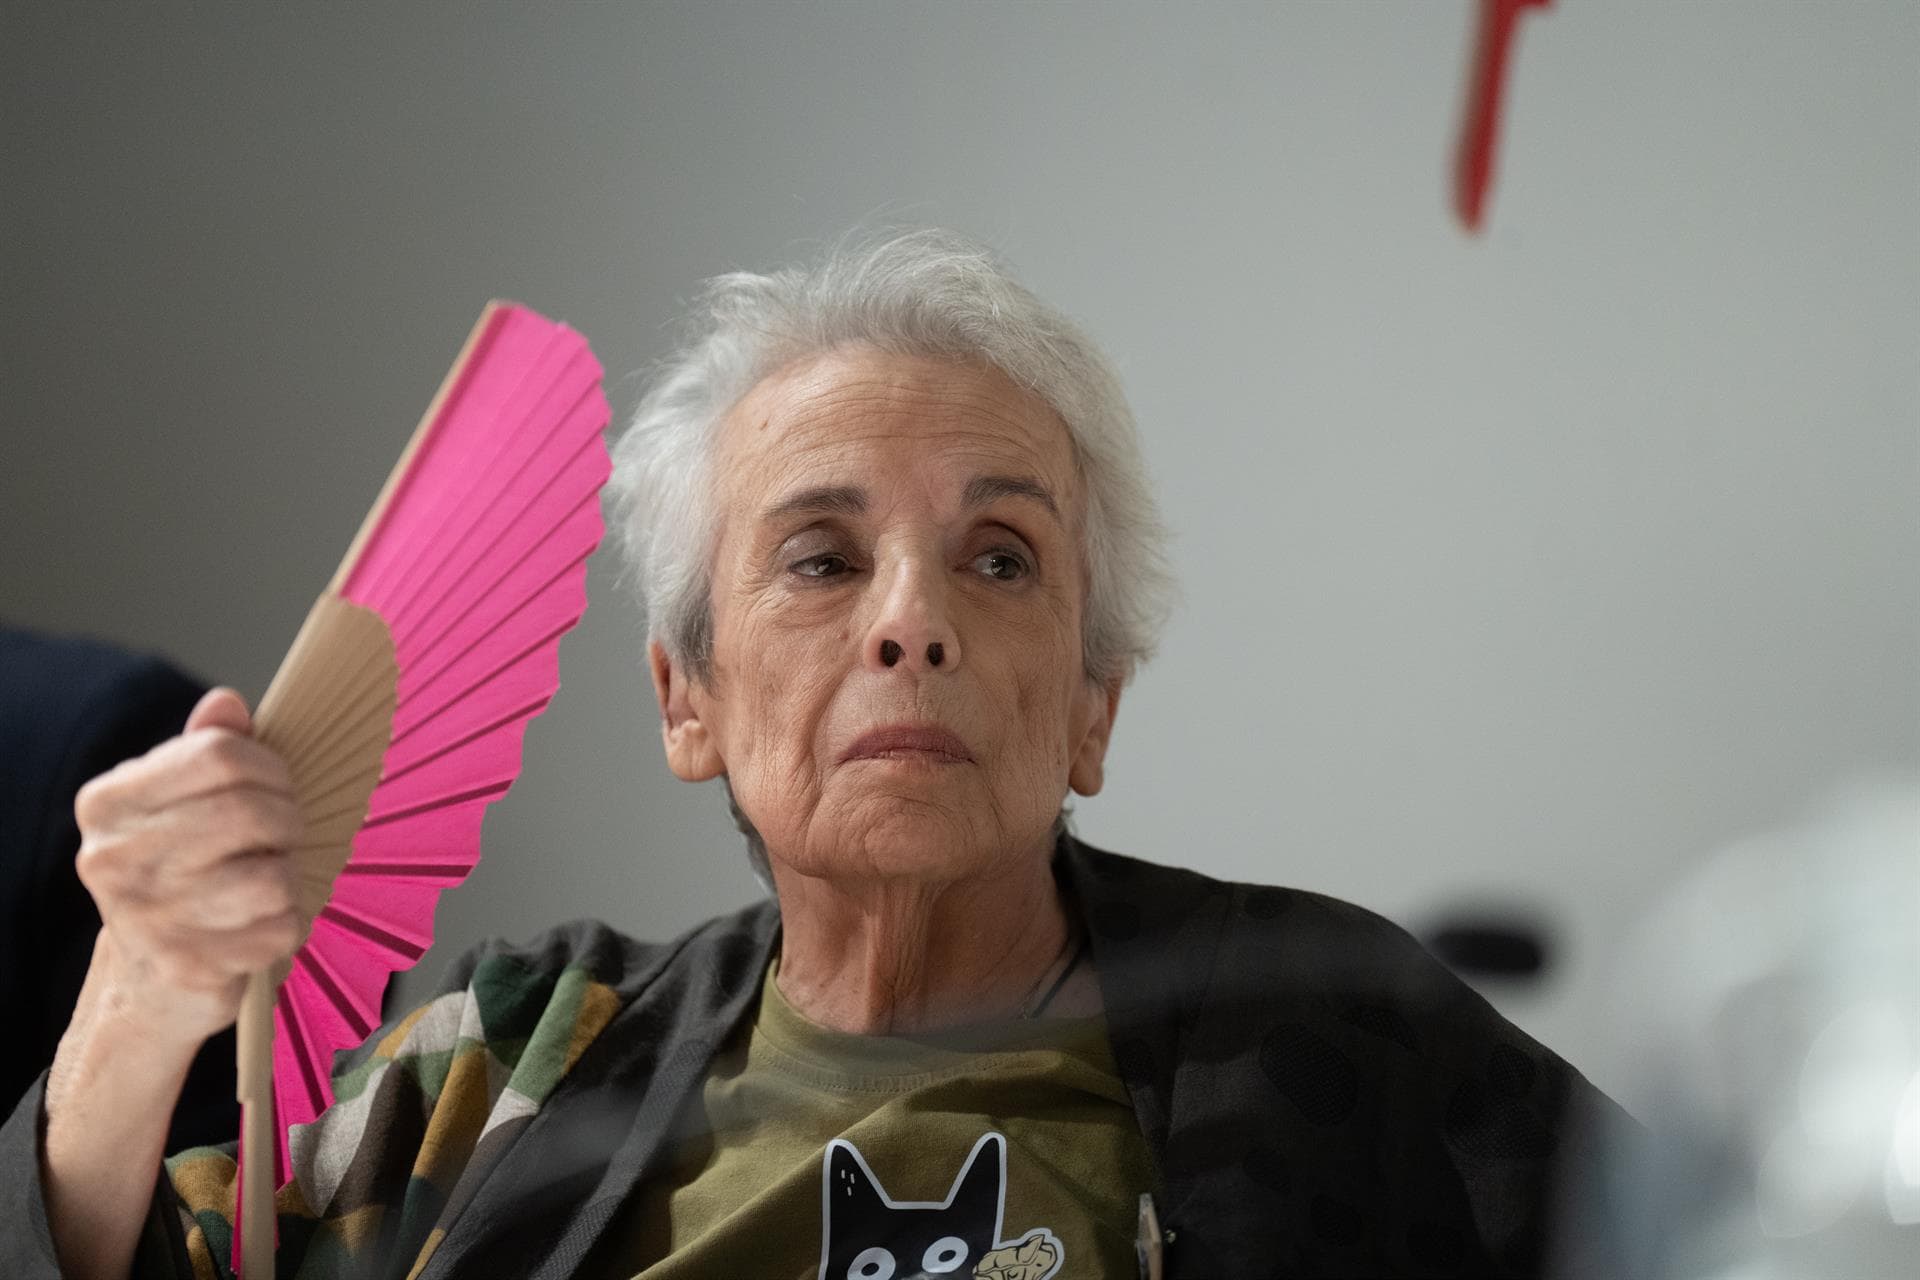 La fotógrafa Isabel Steva, Colita, ha fallecido en Barcelona a los 83 años